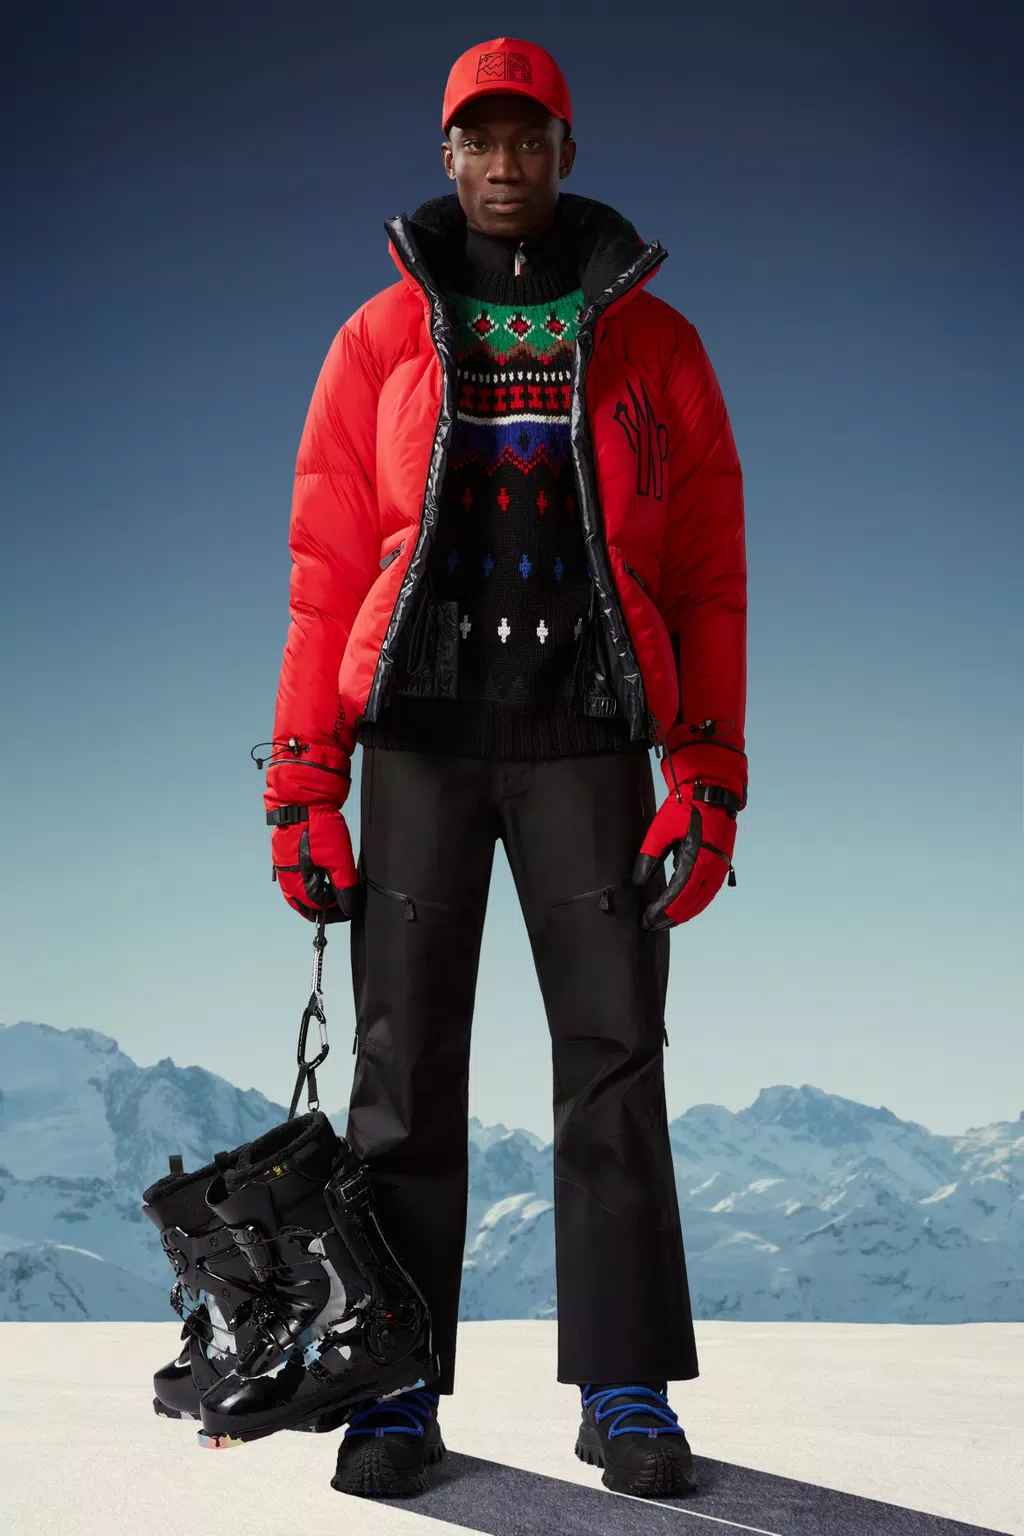 Ropa de Esquí para Mujer, Chaquetas, Pantalones y Petos de Esquí